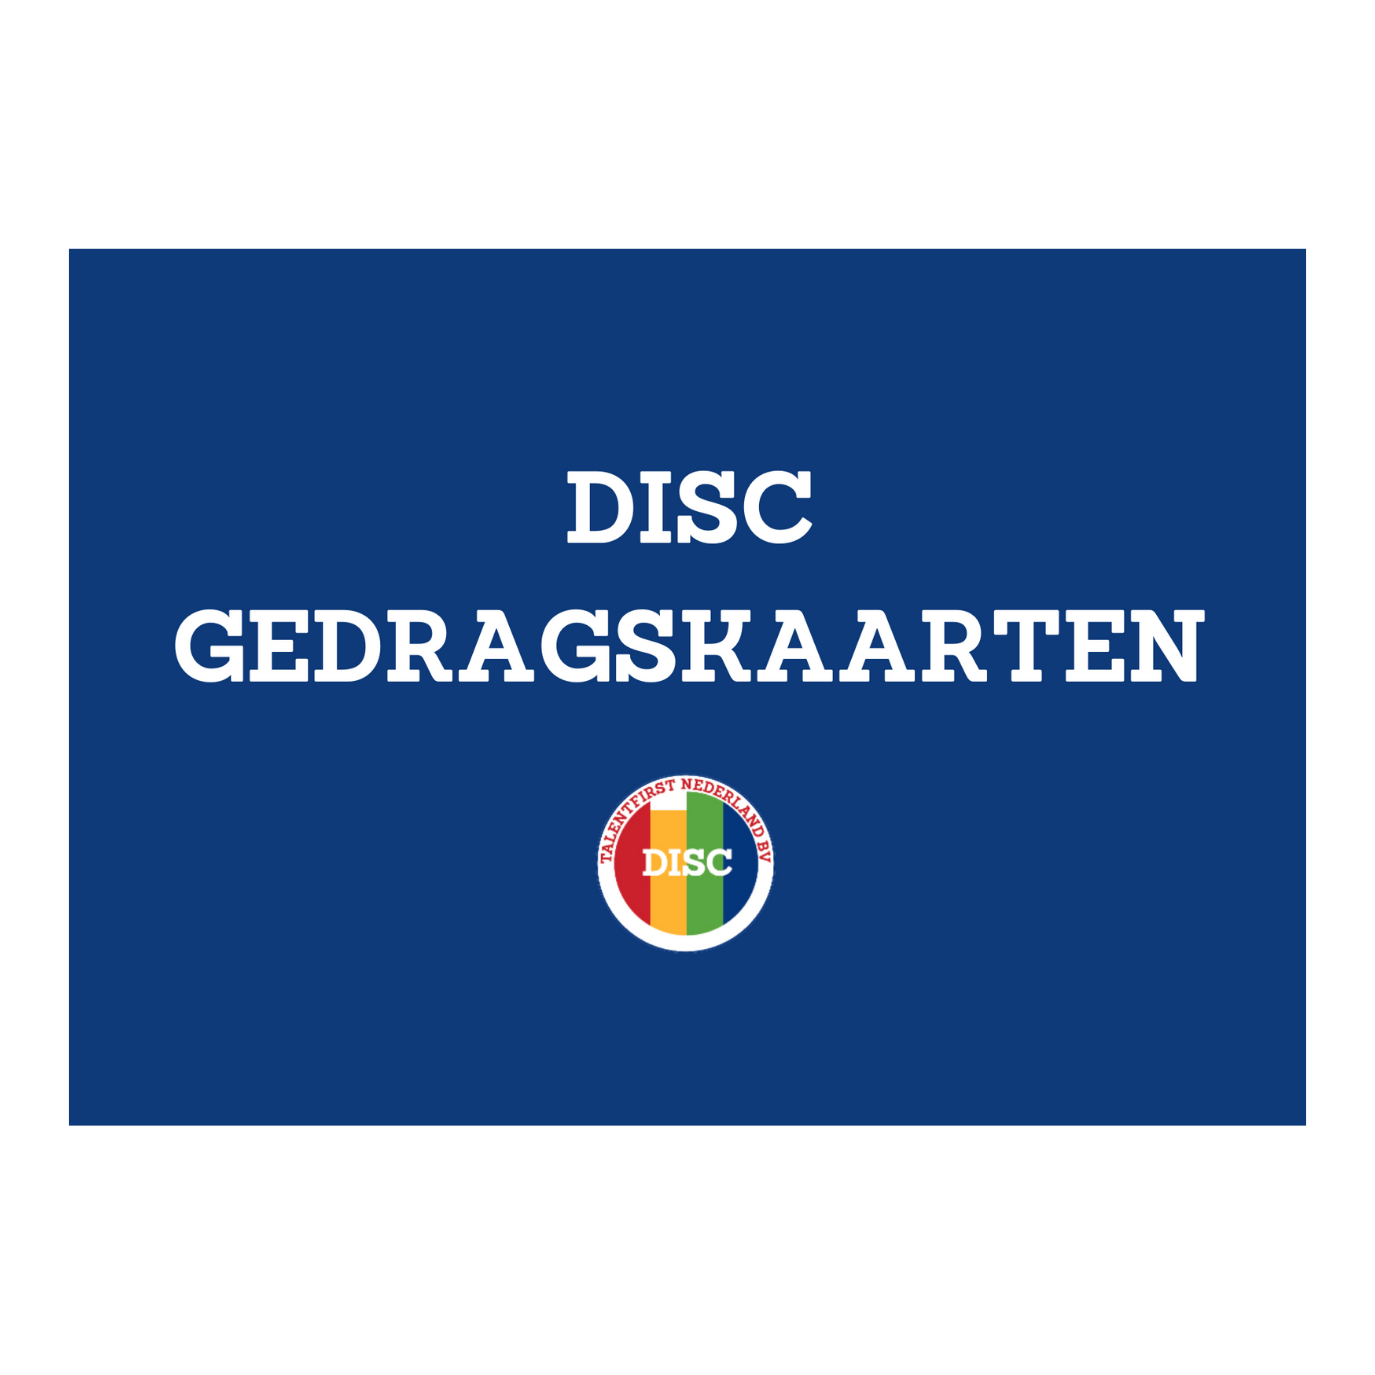 DISC Gedragskaarten - Groot A5